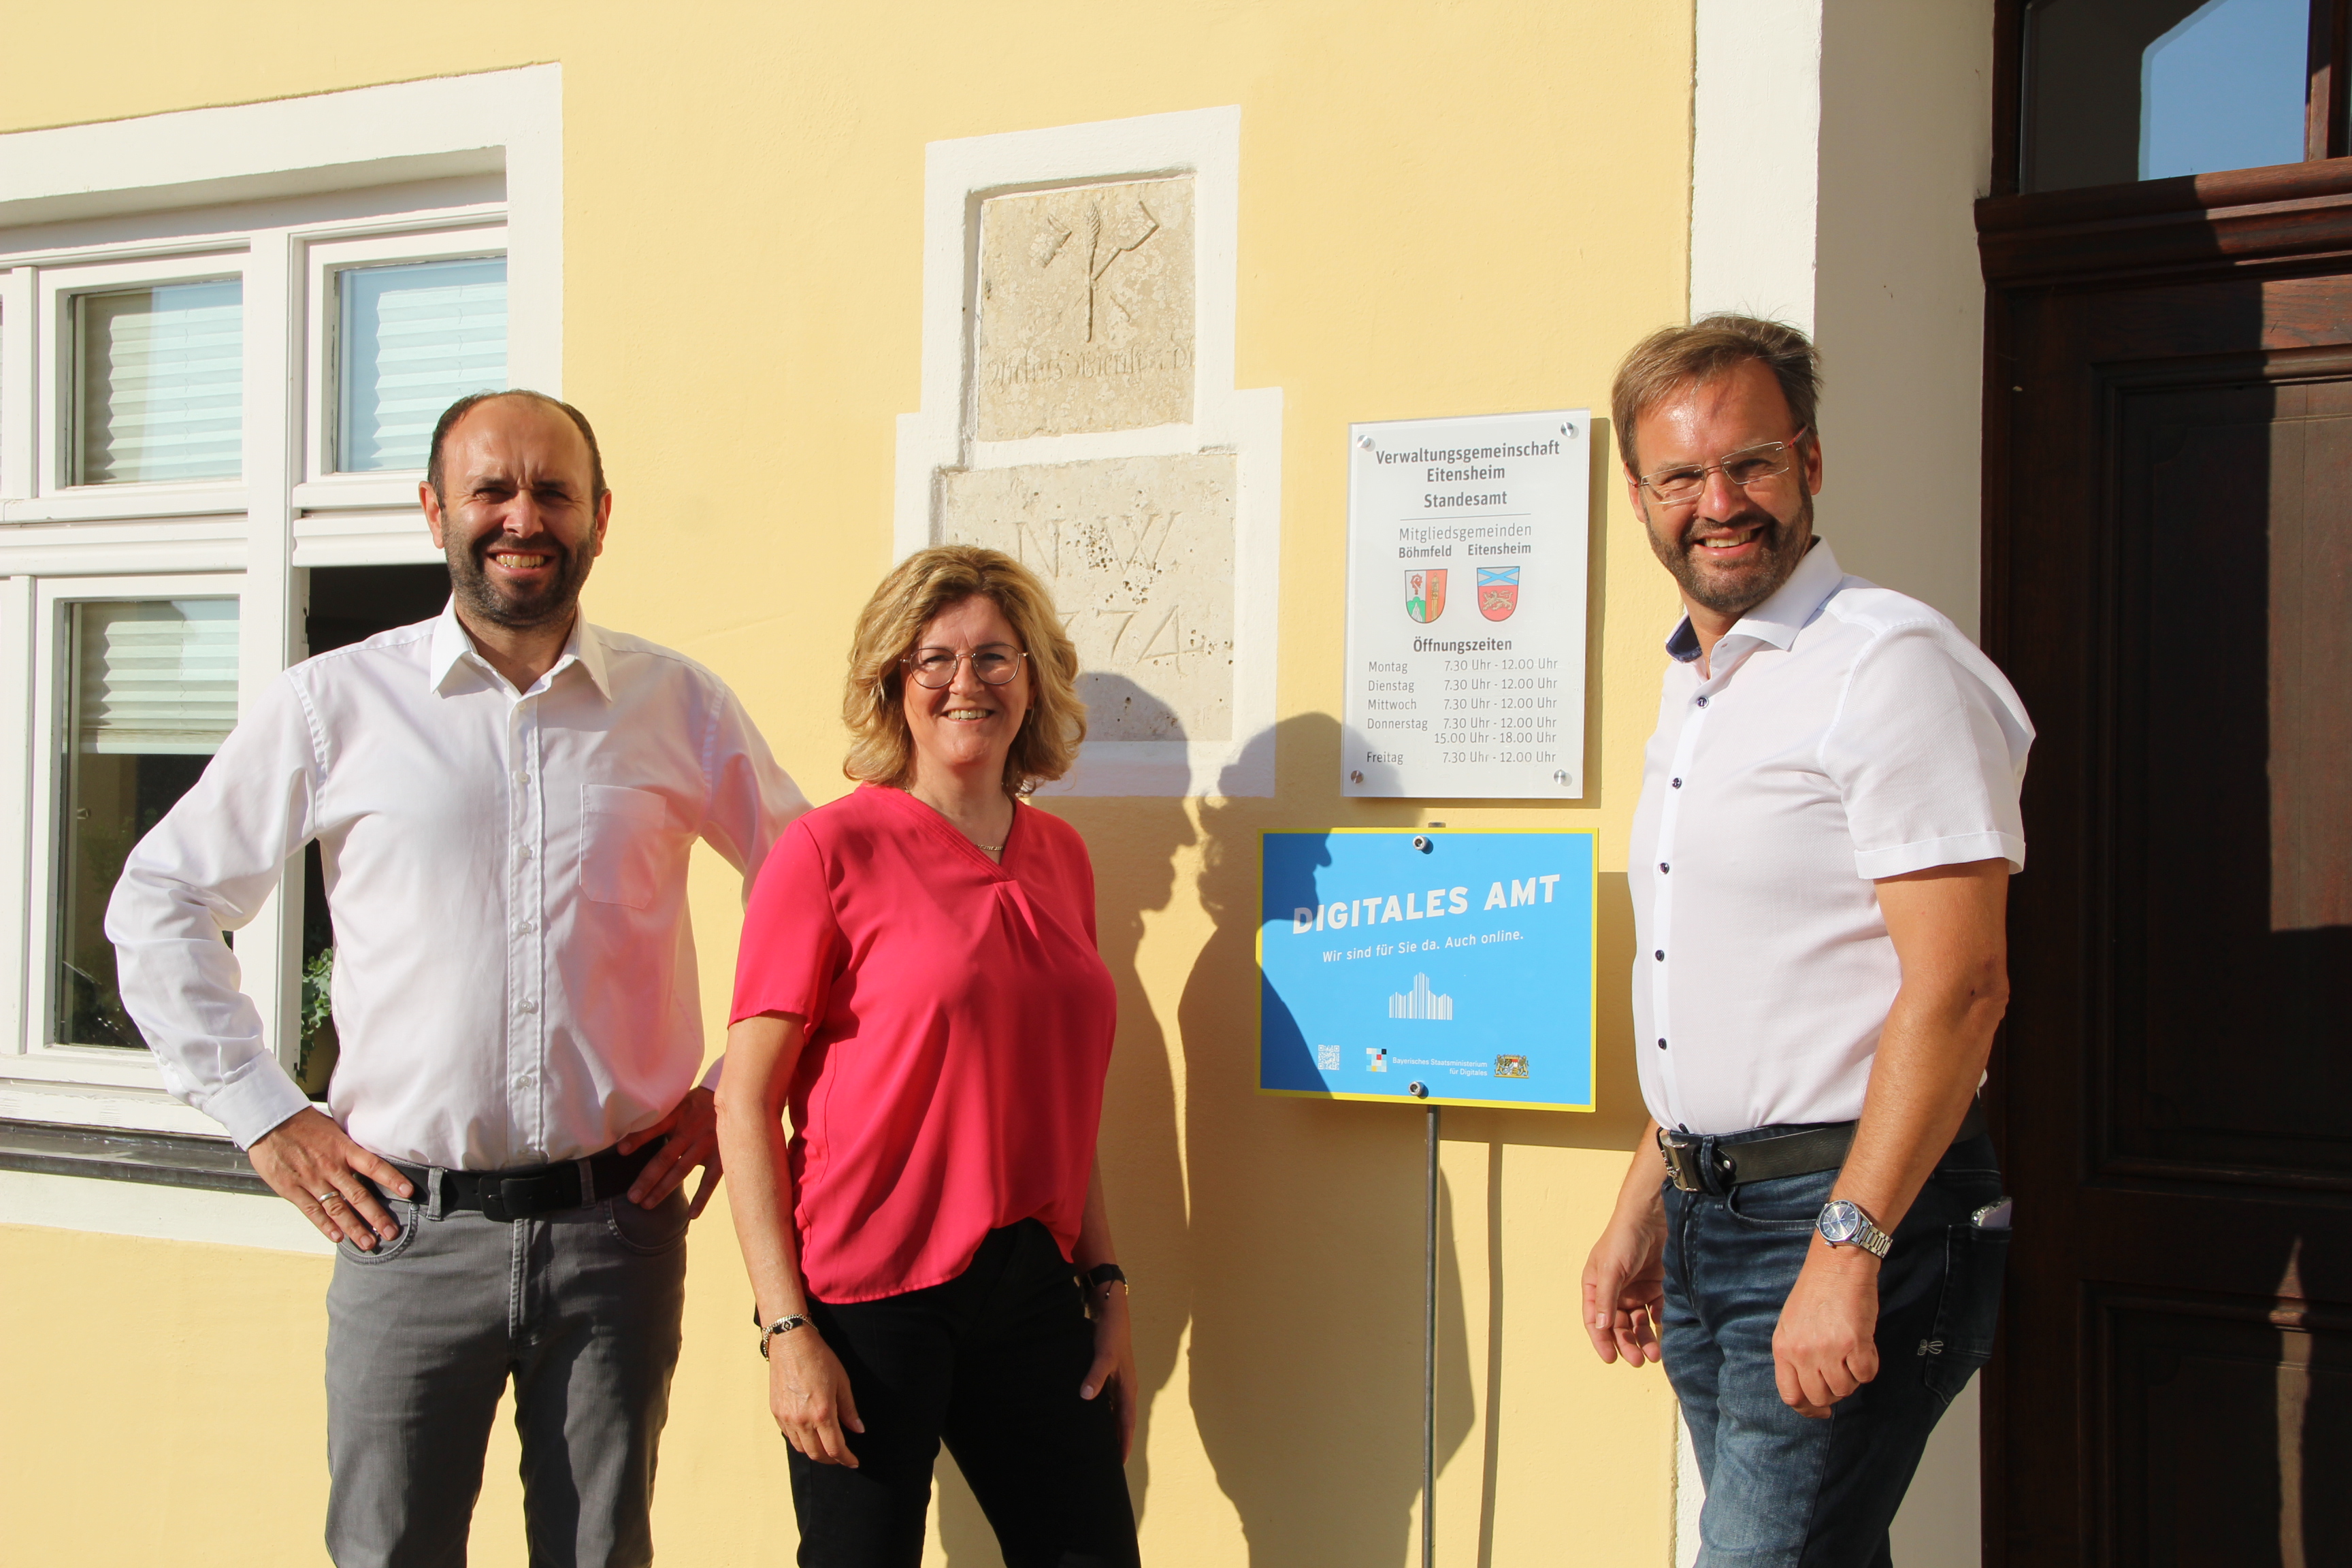 von links: Jürgen Nadler, Elke Pfaffel und Manfred Diepold vor der neu aufgestellten Plakete Digitales Amt